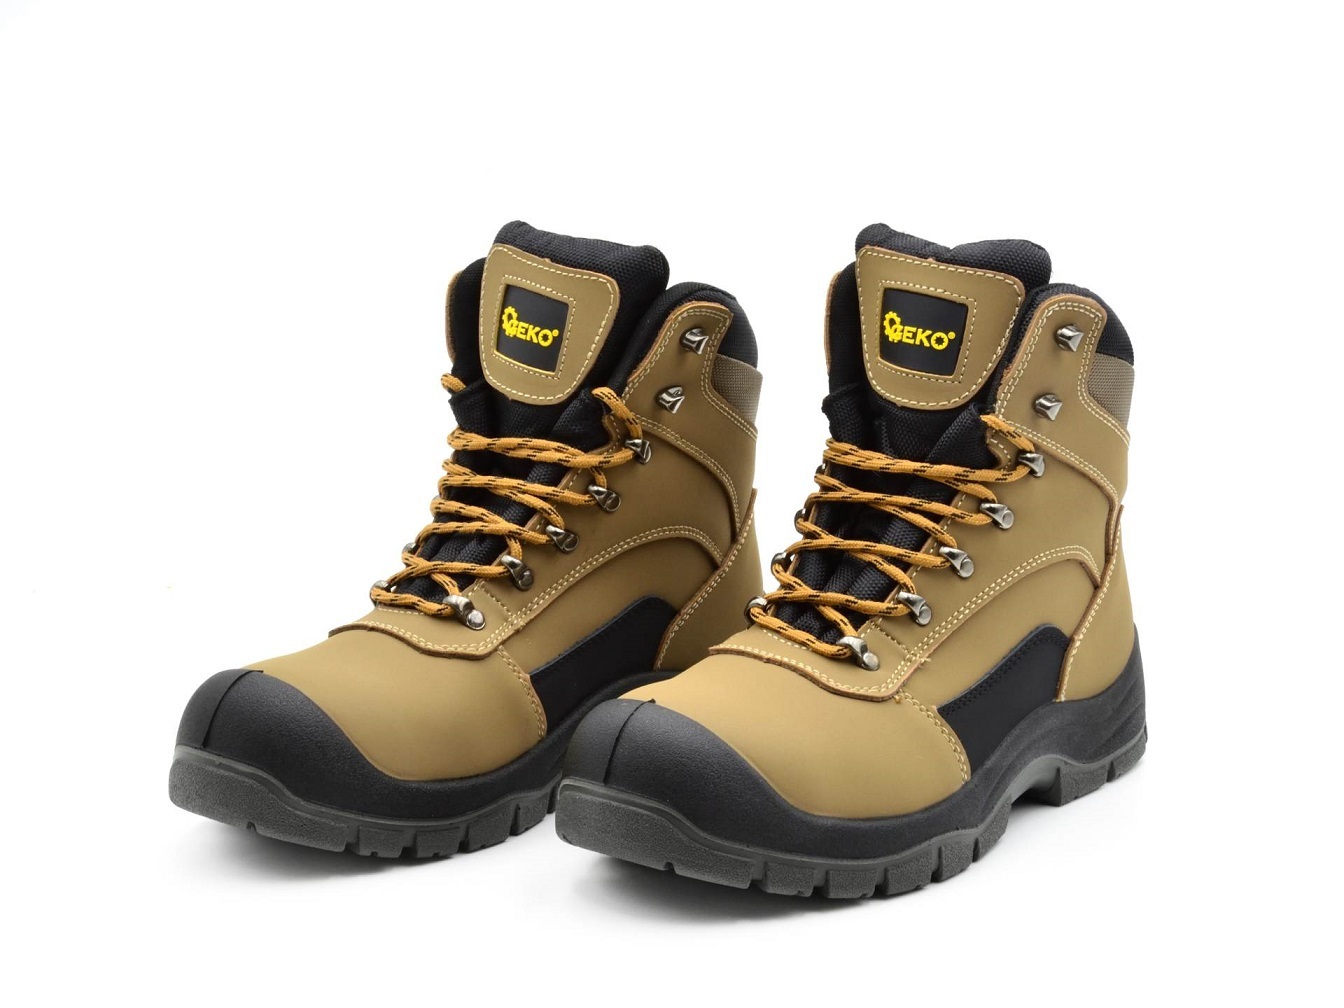 Ochranné pracovní boty velikost 44 GEKO nářadí G90541-44 + Dárek, servis bez starostí v hodnotě 300Kč